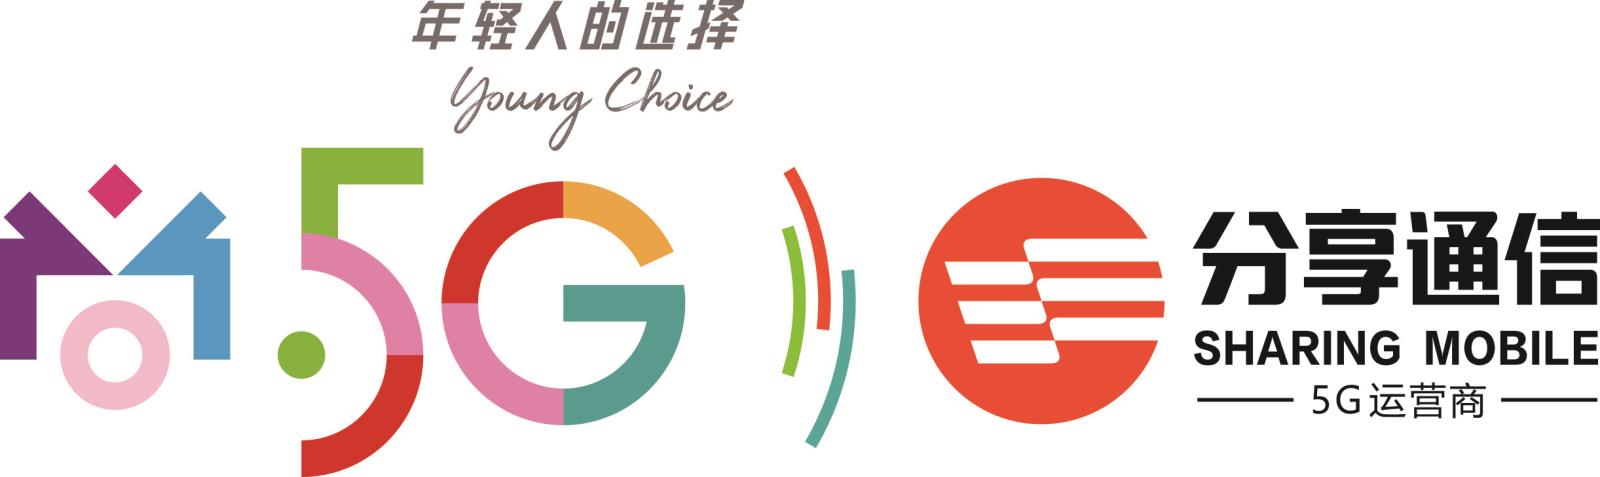 分享尚5G联合logo 修改年轻人的选择.jpg